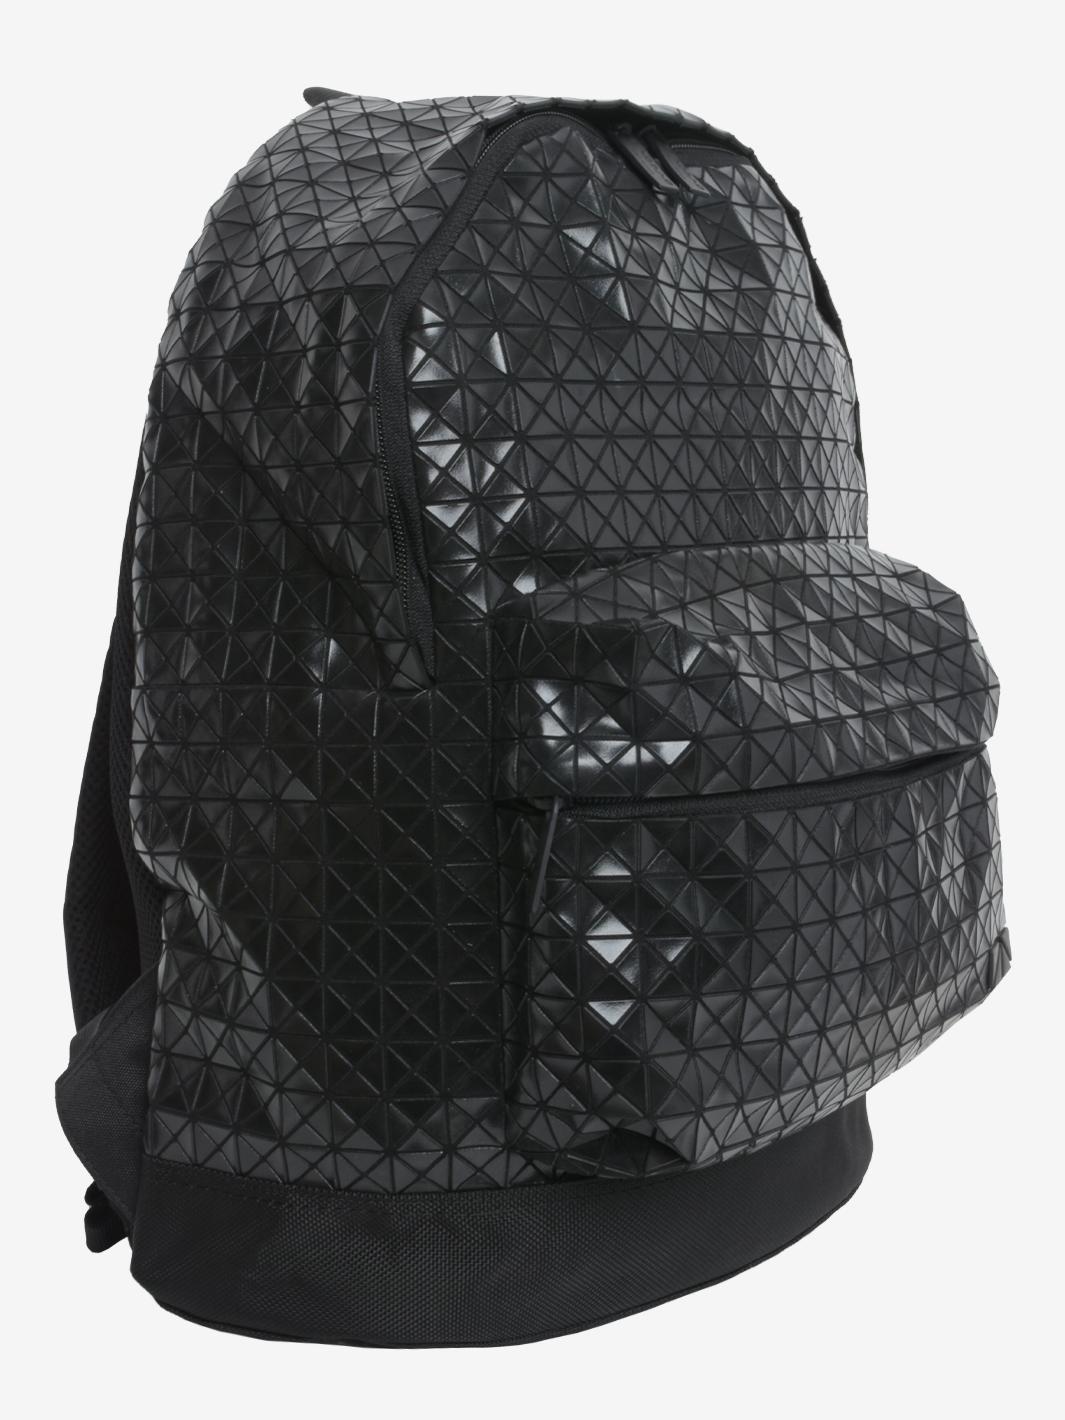 Le sac à dos Bao Bao Issey Miyake est un accessoire unique doté du motif géométrique emblématique de Miyake, de bretelles réglables, d'une poche frontale zippée, d'un compartiment intérieur unique avec poche zippée et d'une applique de logo à